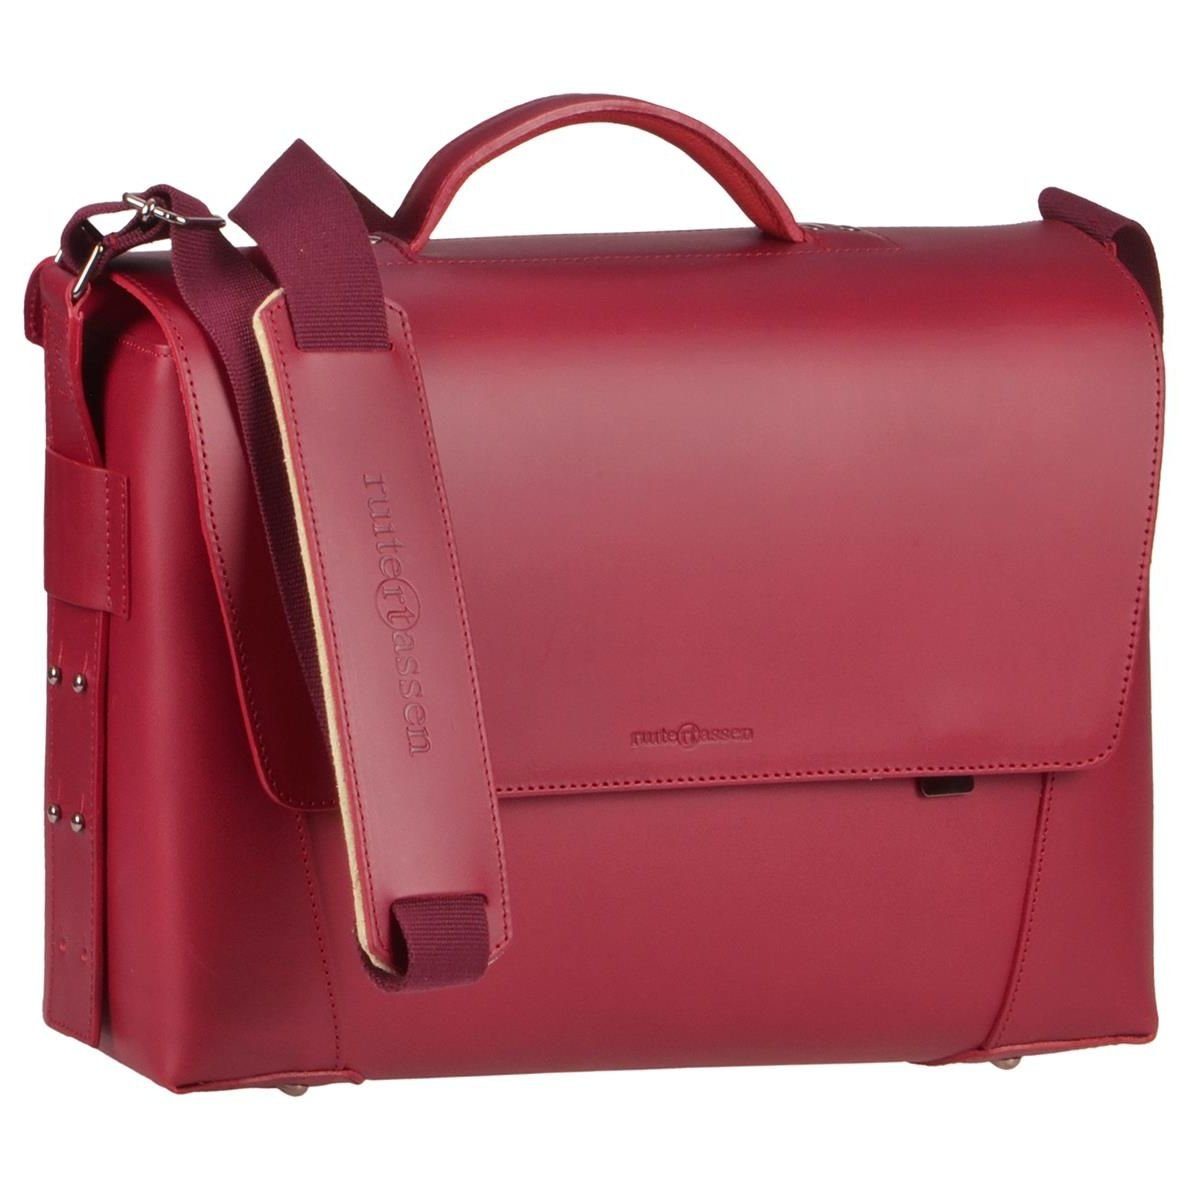 Ruitertassen Aktentasche Vanguard, 40 cm Lehrertasche mit 3 Fächern, dickes rustikales Leder in rot